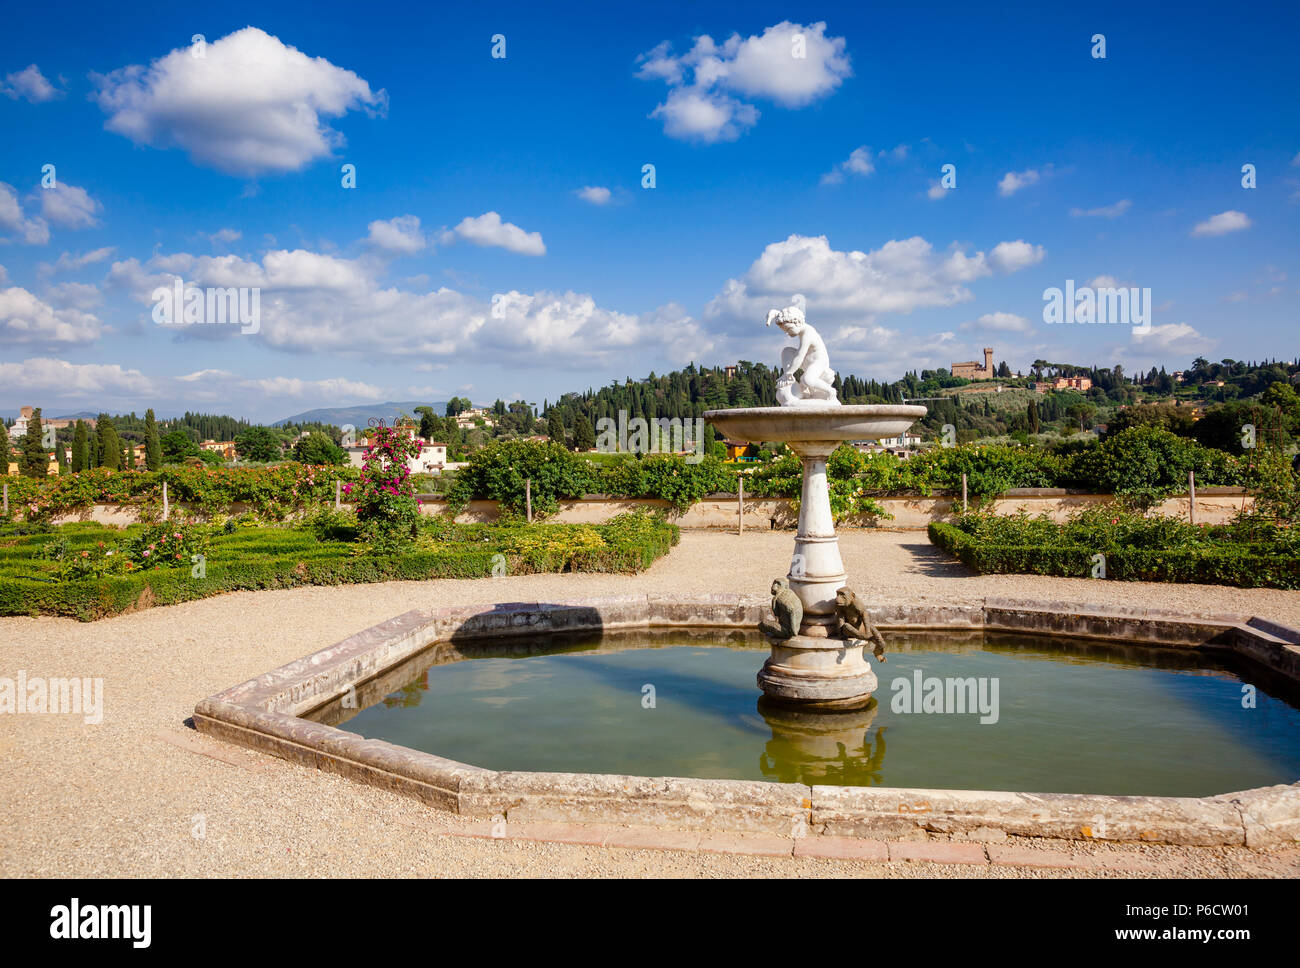 Fountain at Knights Garden, the upper terrace of Boboli Gardens park, Palazzo Pitti, Florence, Tuscany, Italy Stock Photo